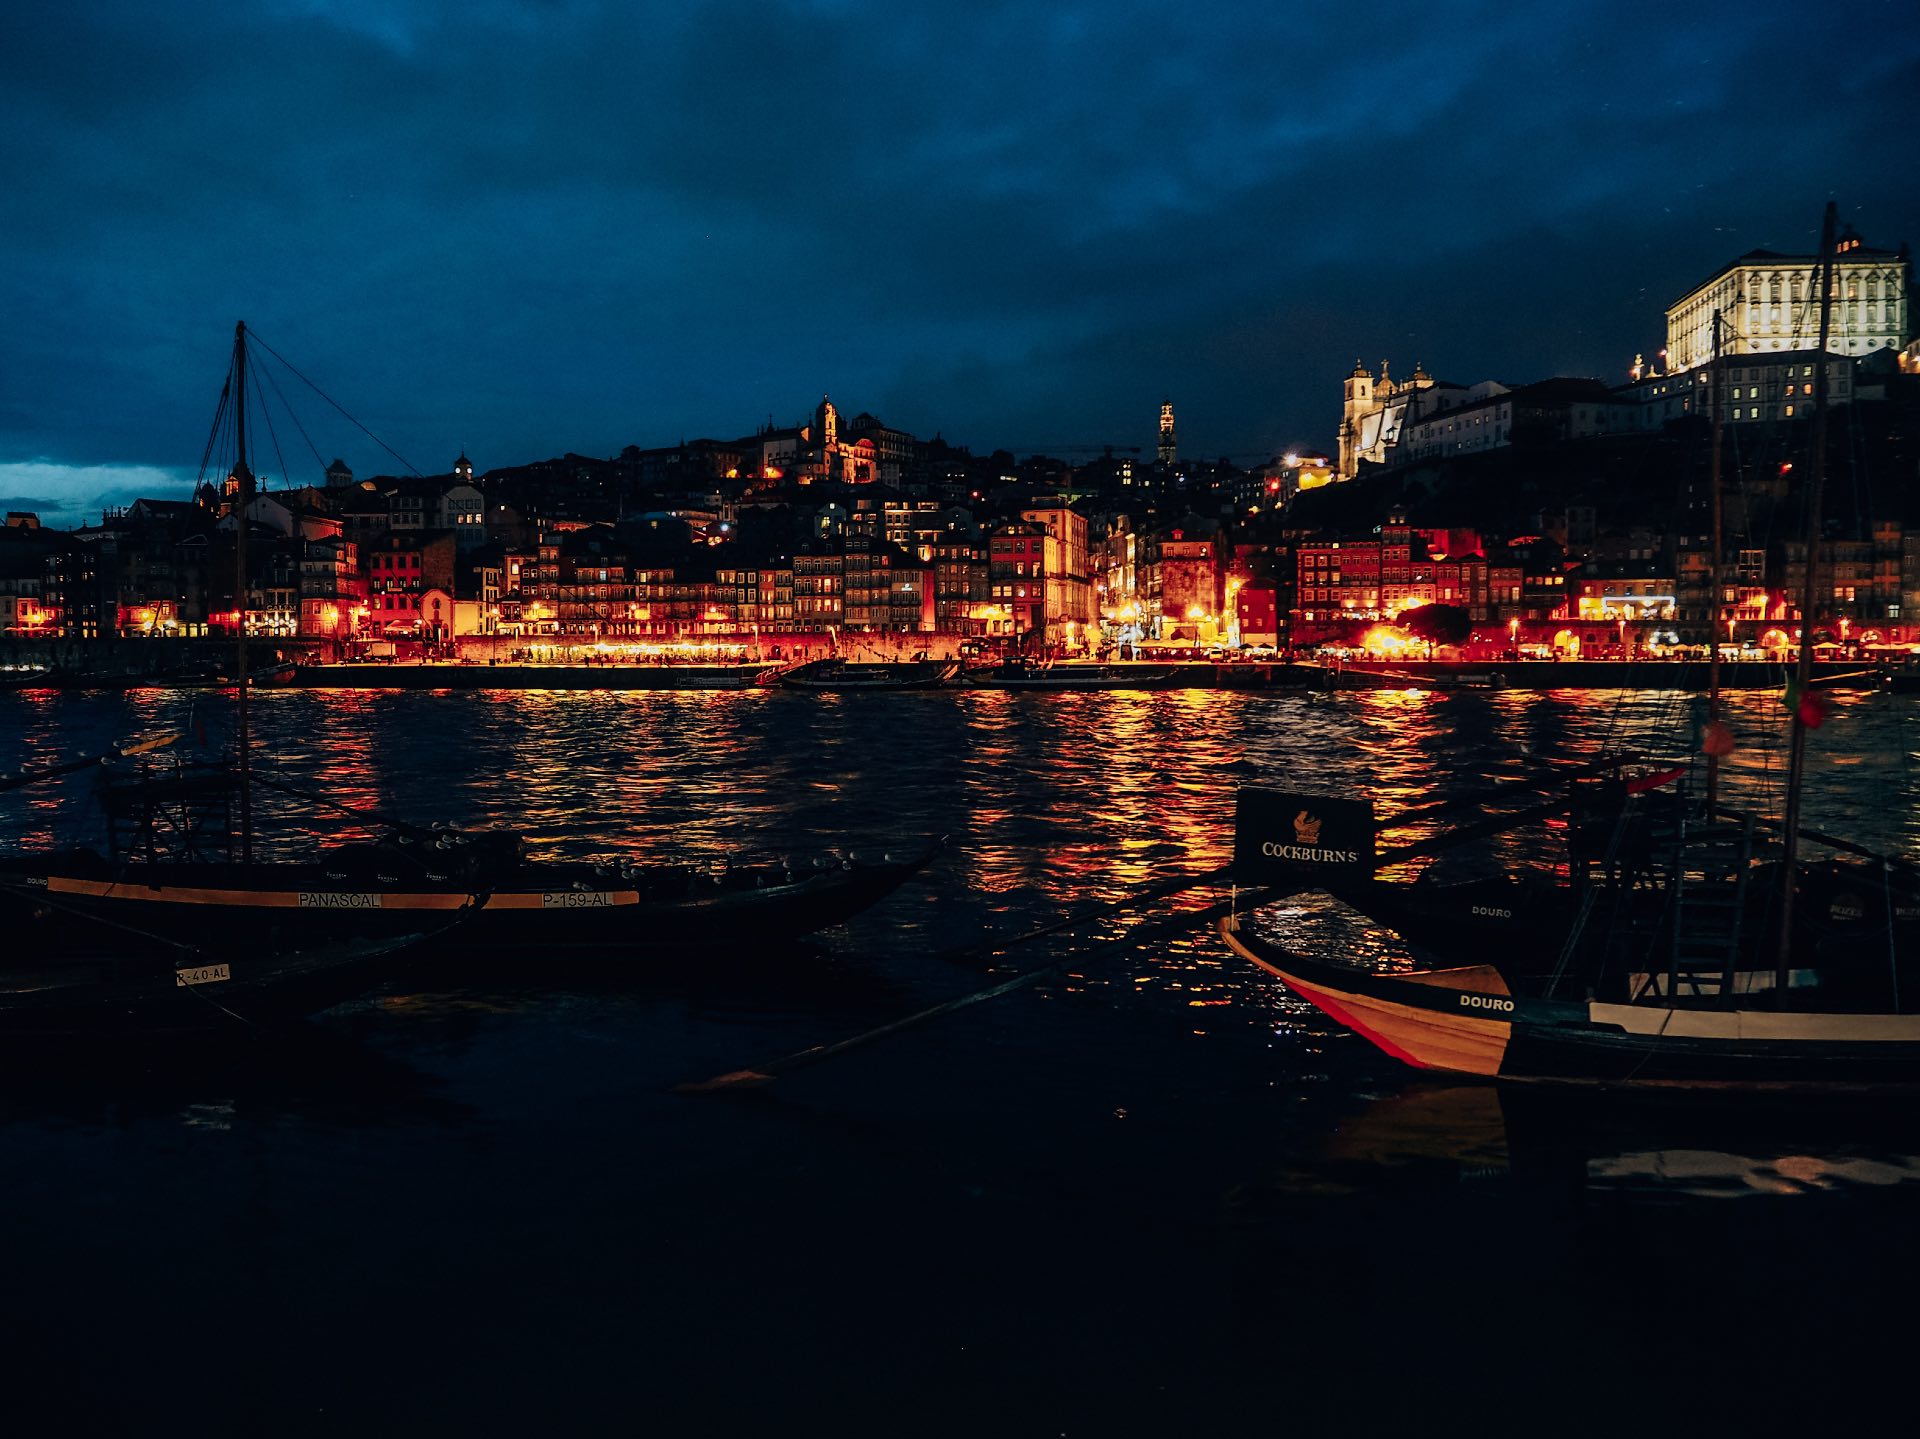 Vilanova de Gaia al anochecer, las mejores vistas de Oporto